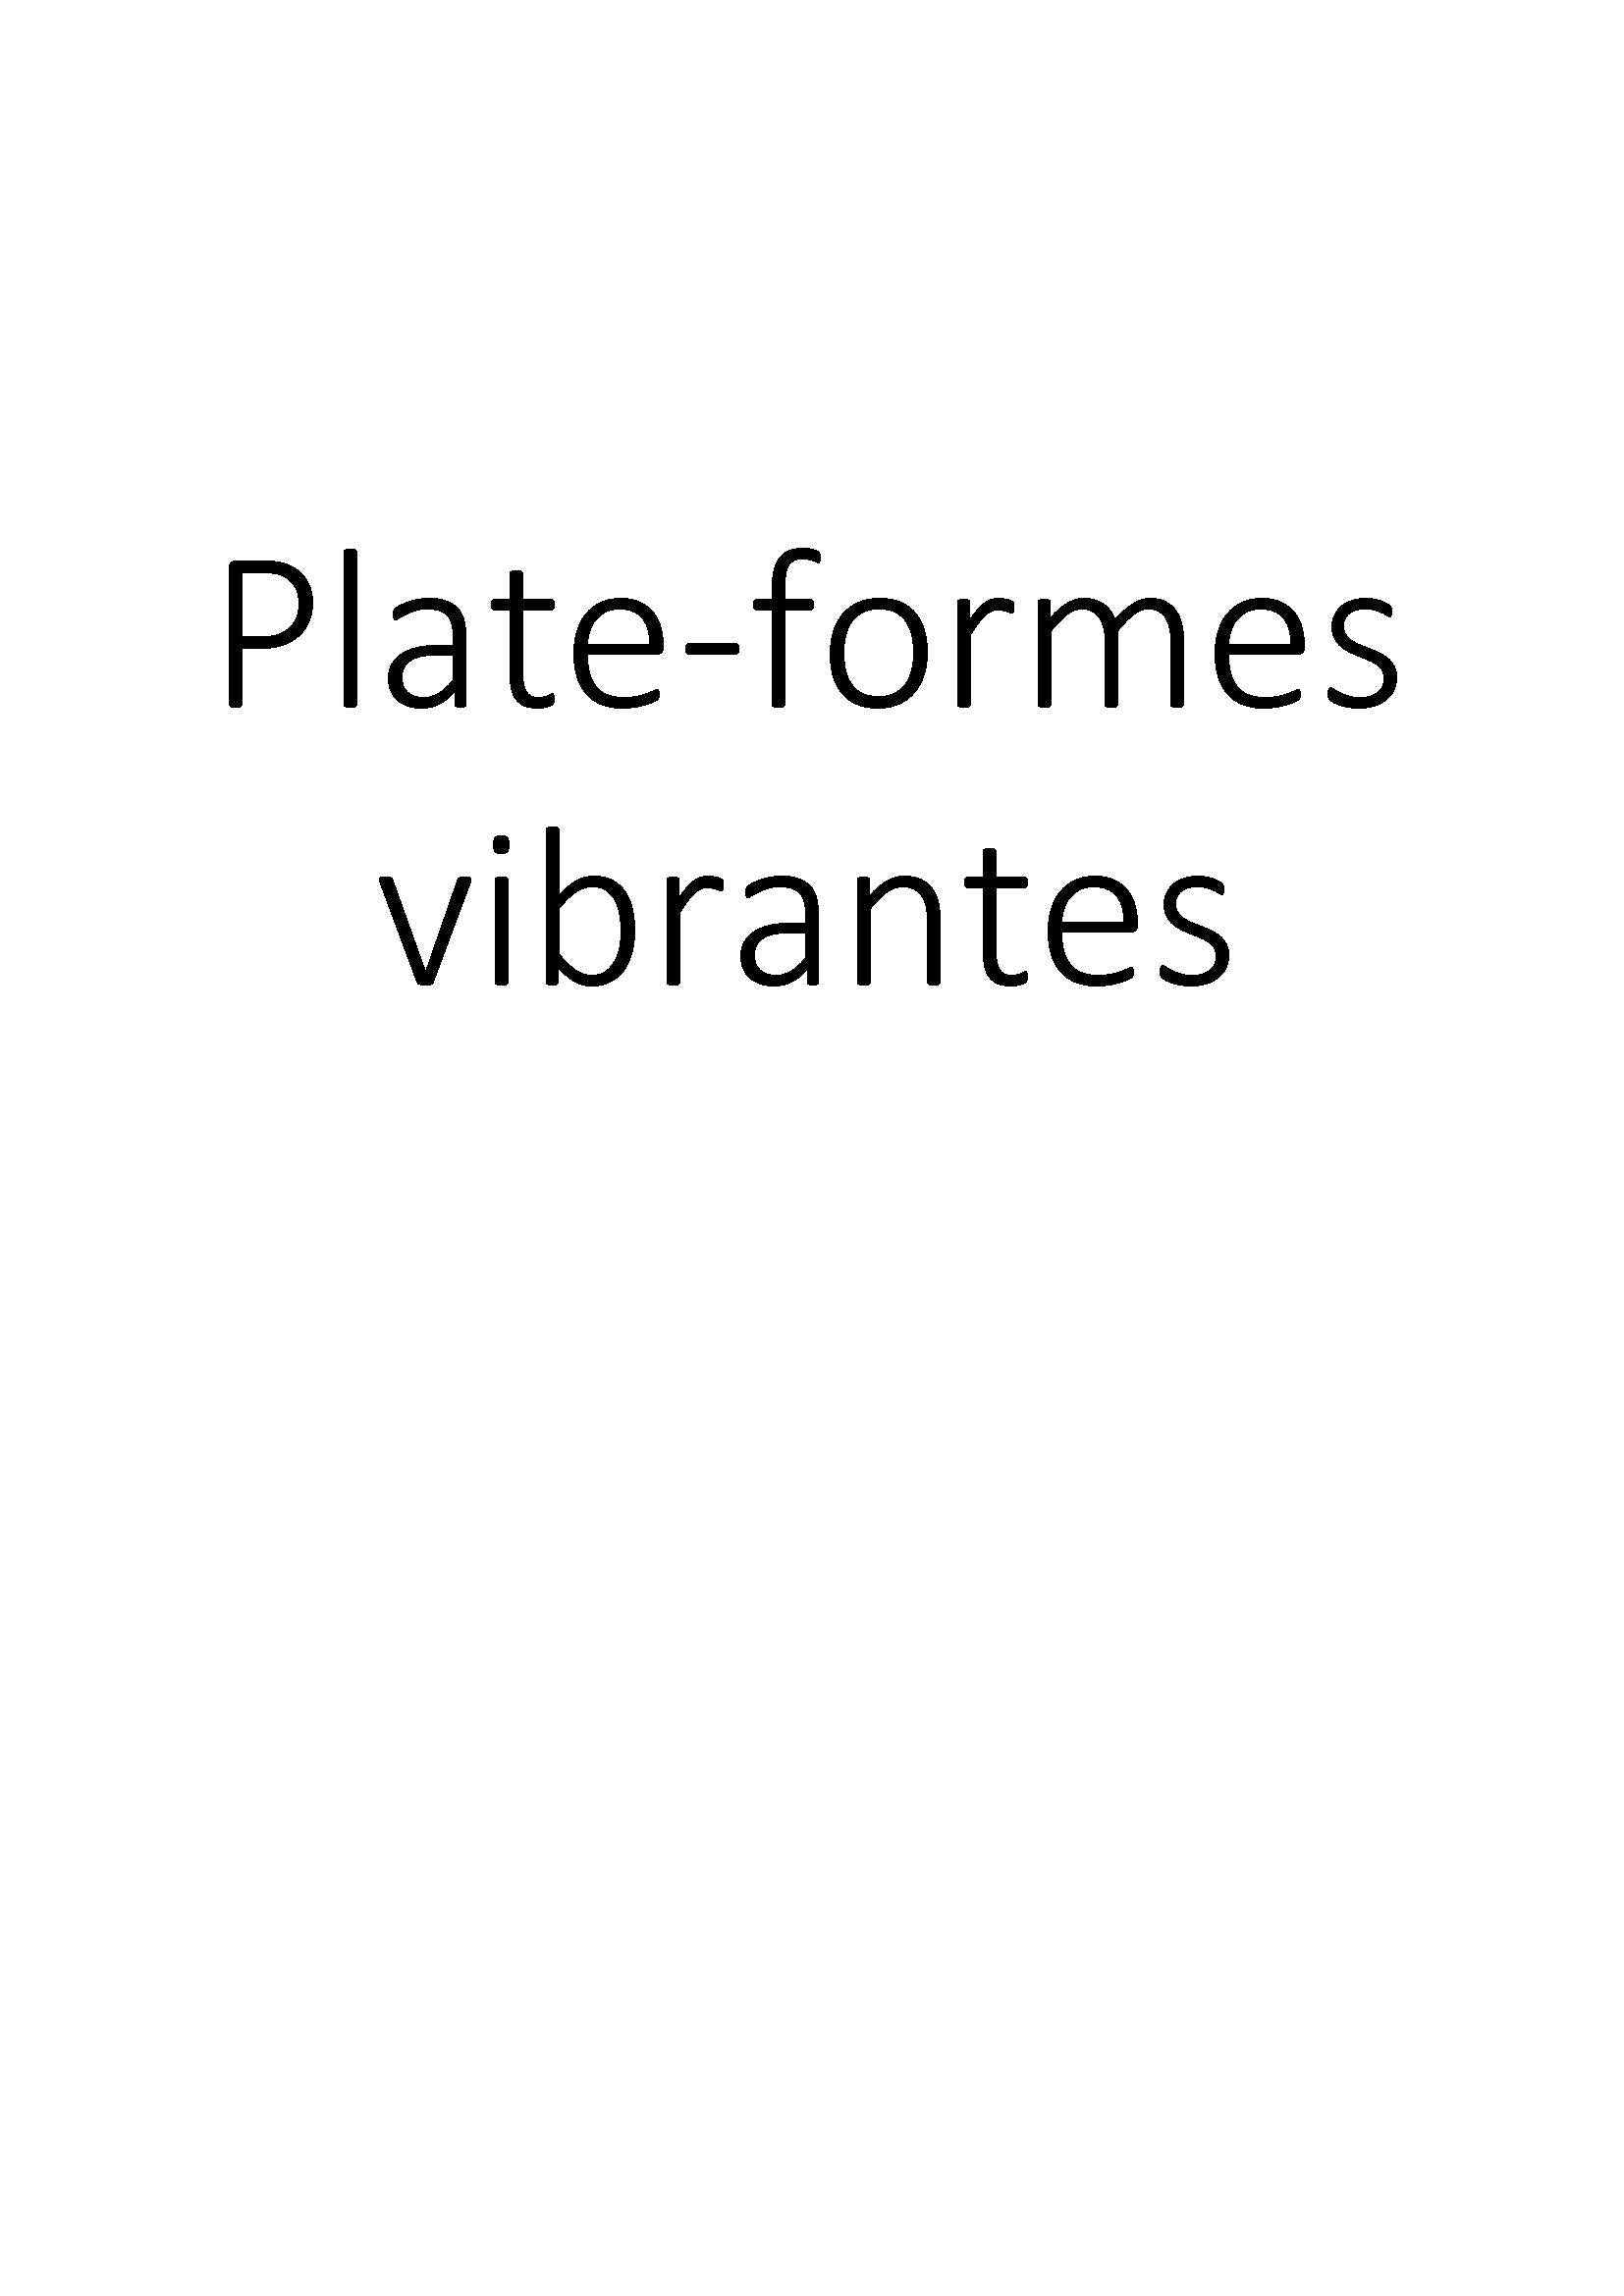 Plate-formes vibrantes clicktofournisseur.com